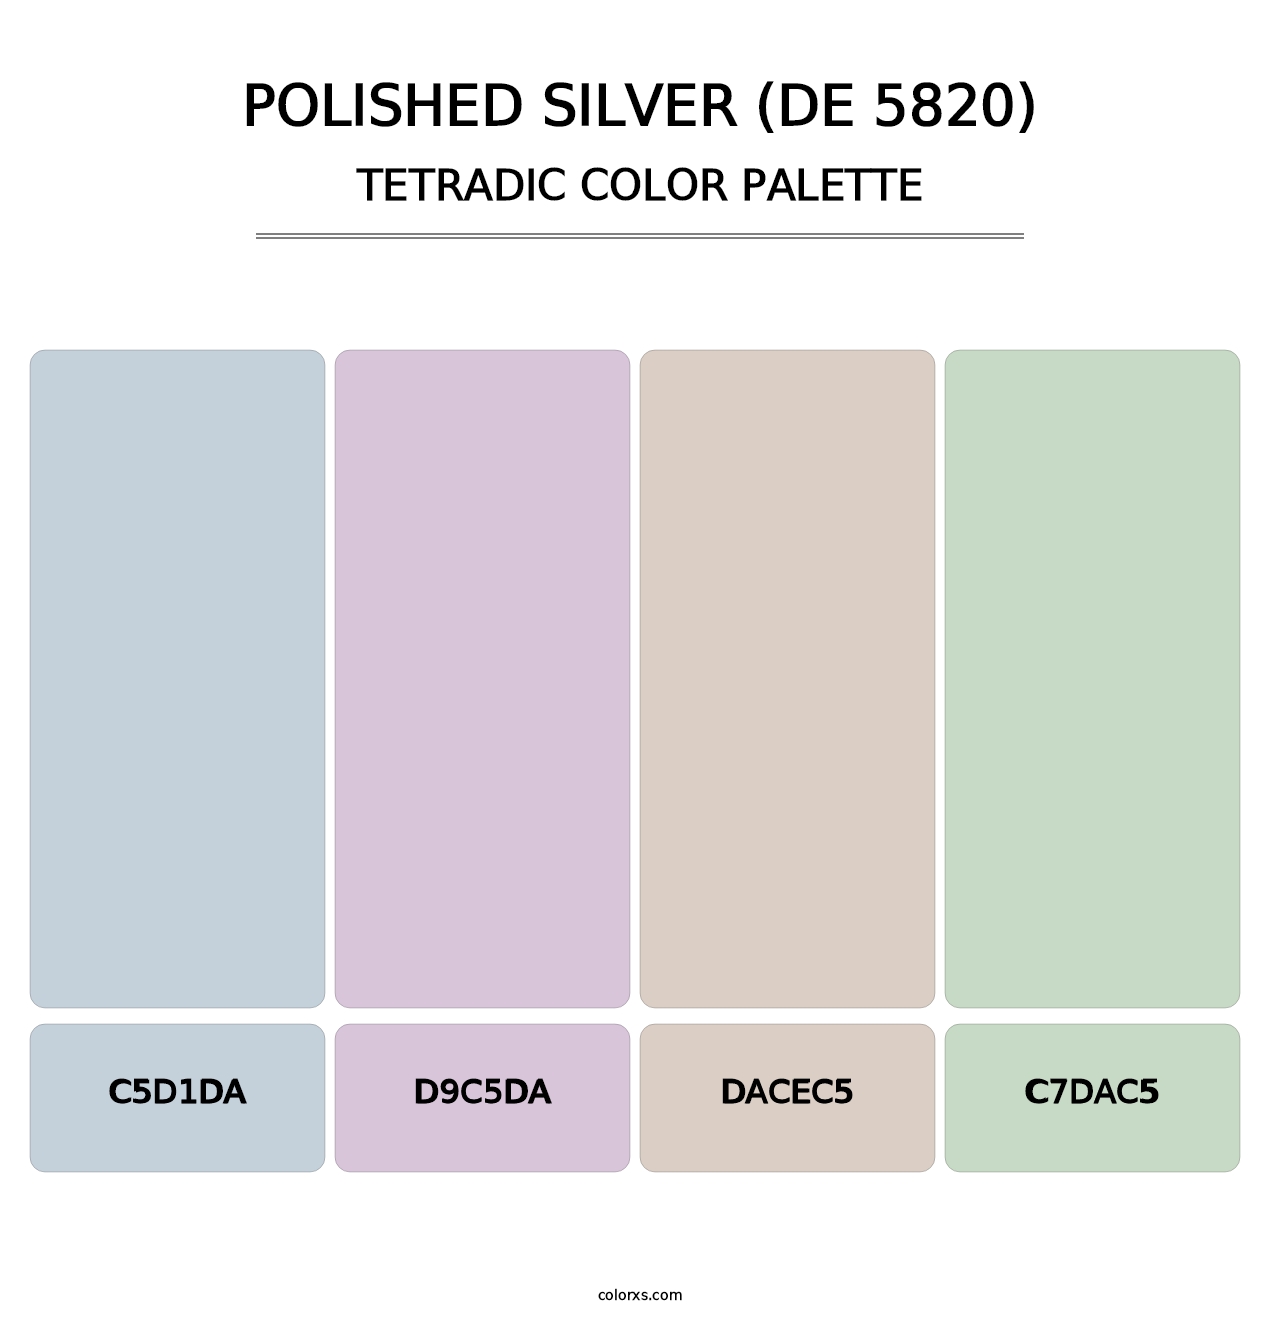 Polished Silver (DE 5820) - Tetradic Color Palette